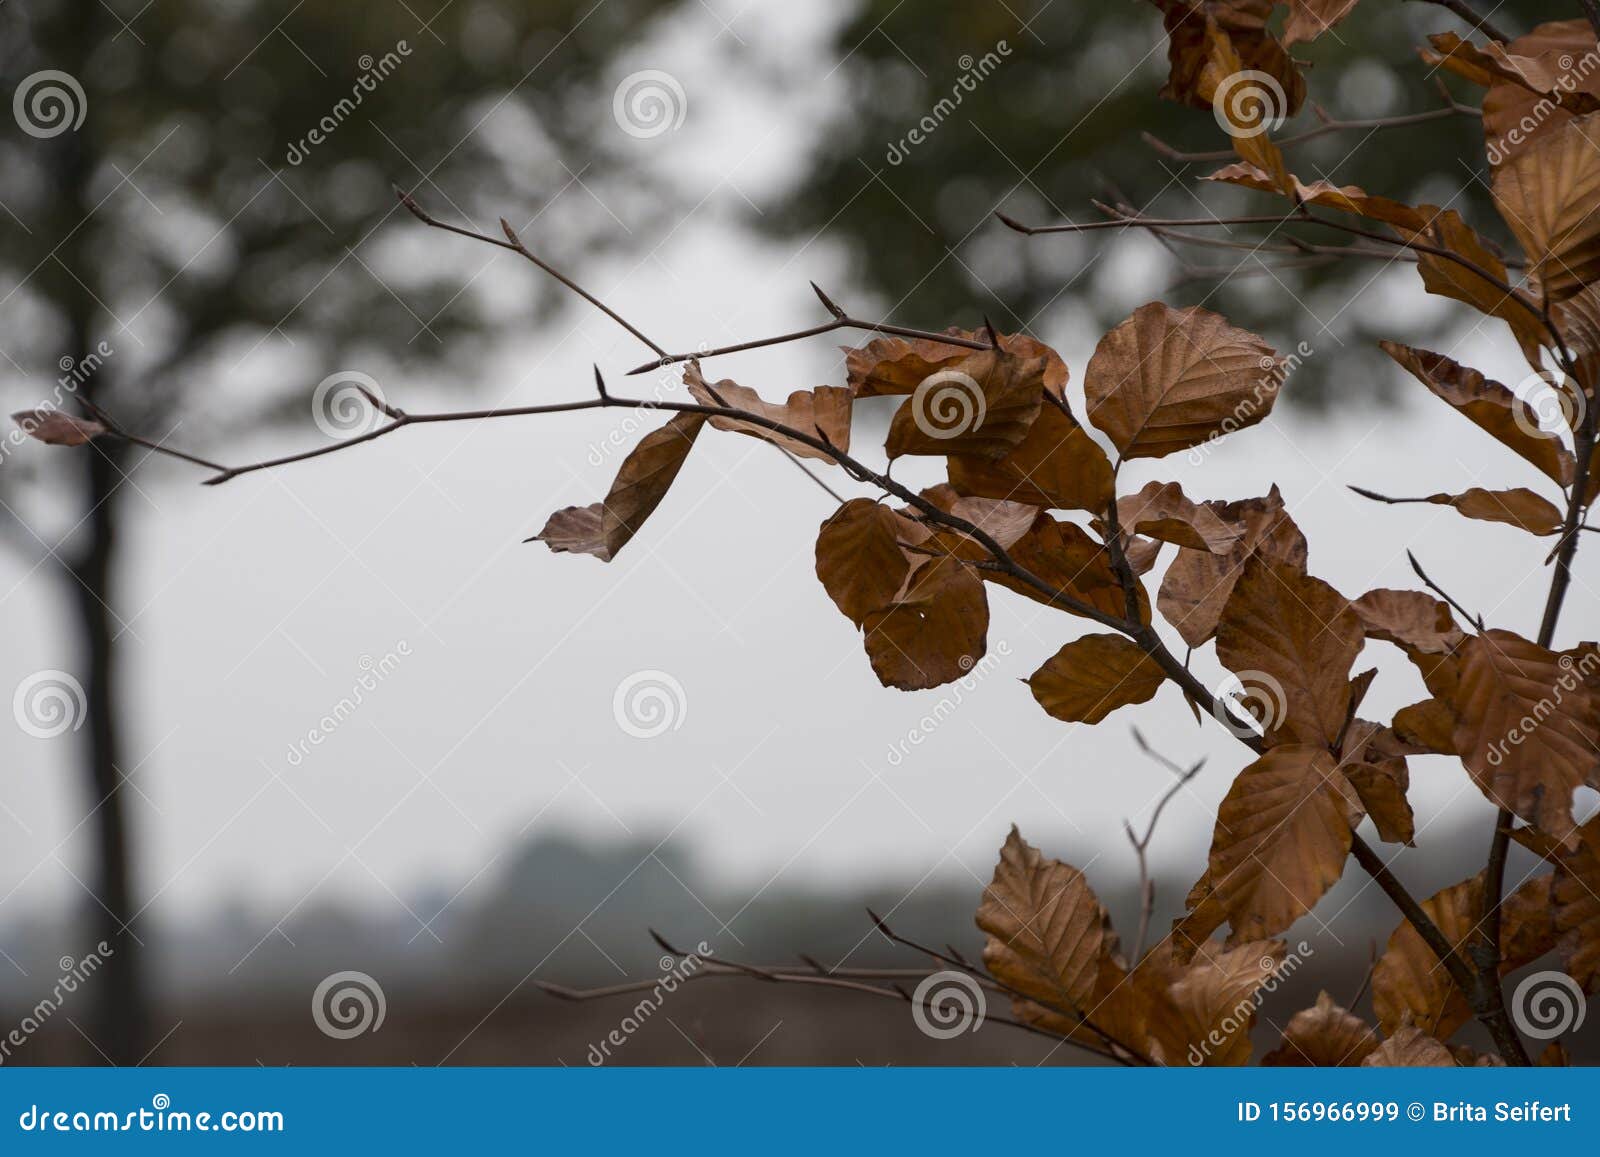 枯叶背景 枯叶纹理 树上的棕叶库存图片 图片包括有停止 特写镜头 有机 天旱 公园 澳洲